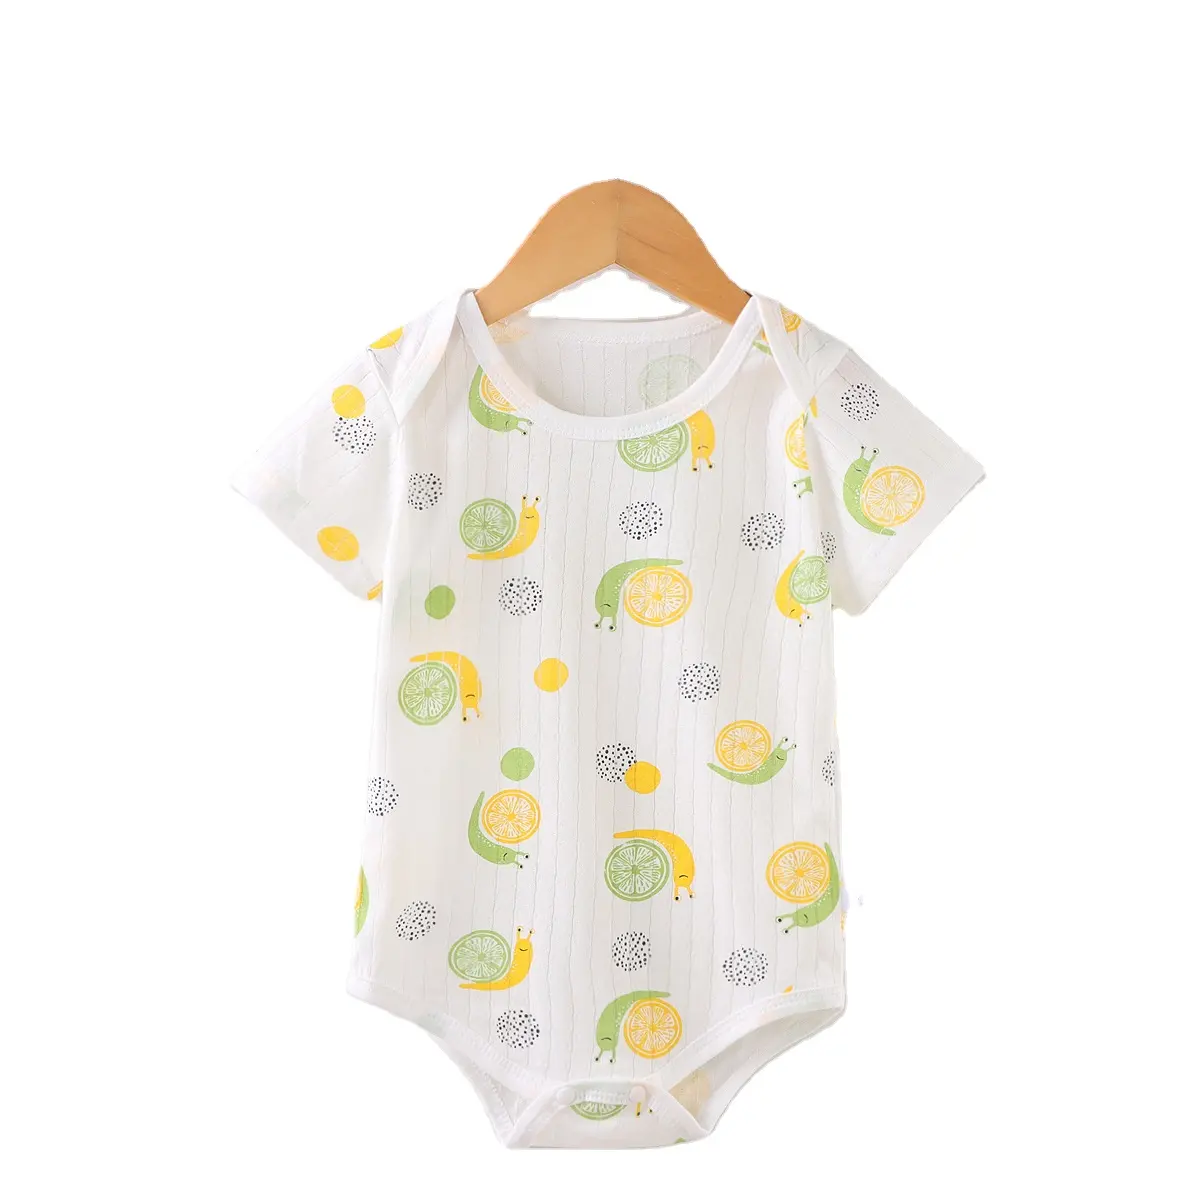 Marka yeni özelleştirme pamuk bebek örgü manyetik bebek Bodysuit Romper sevimli karikatür erkek bebek kız giysileri